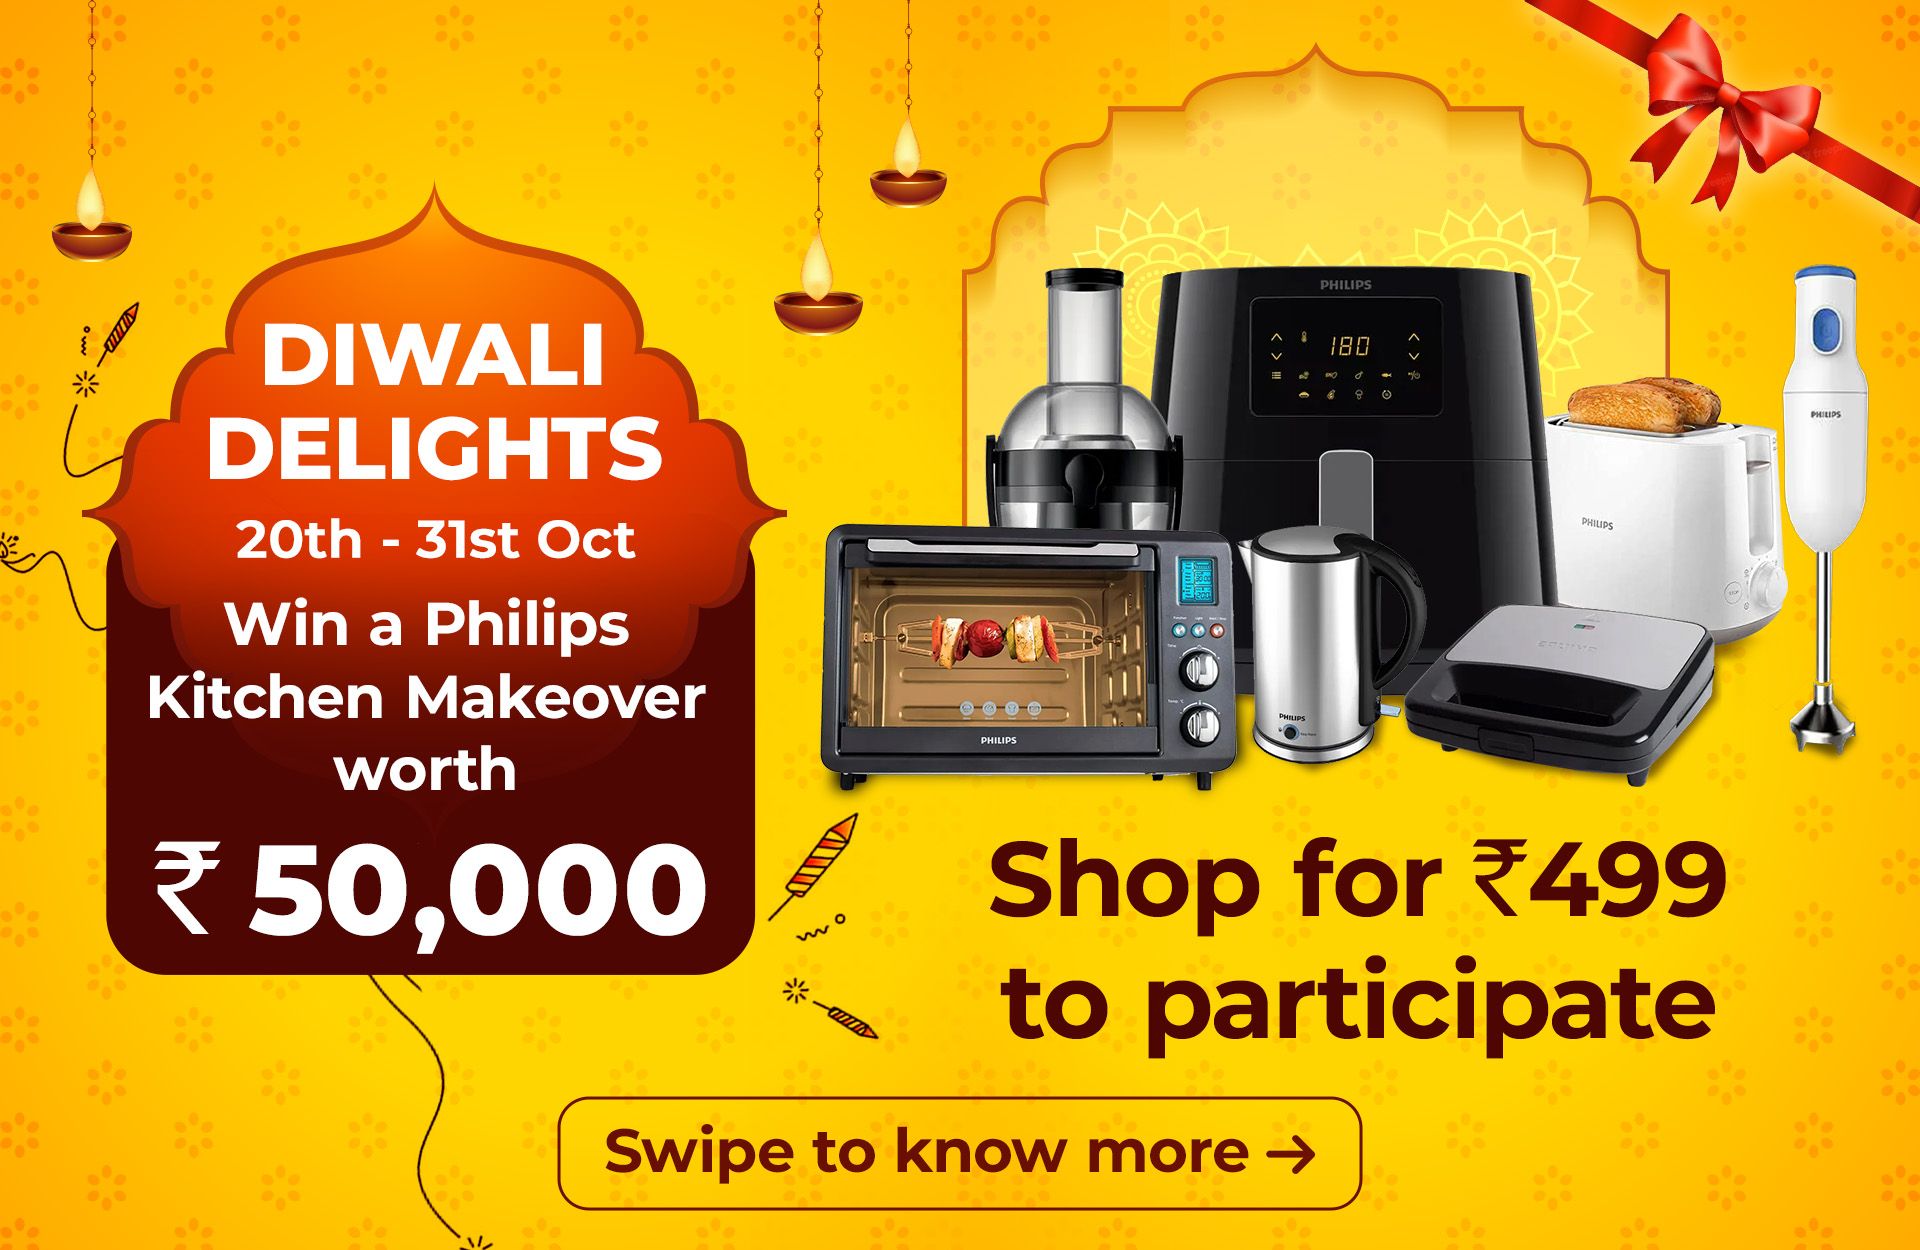 Buy BB Royal Premium Diwali Gift Box Online at Best Price of Rs 749 -  bigbasket